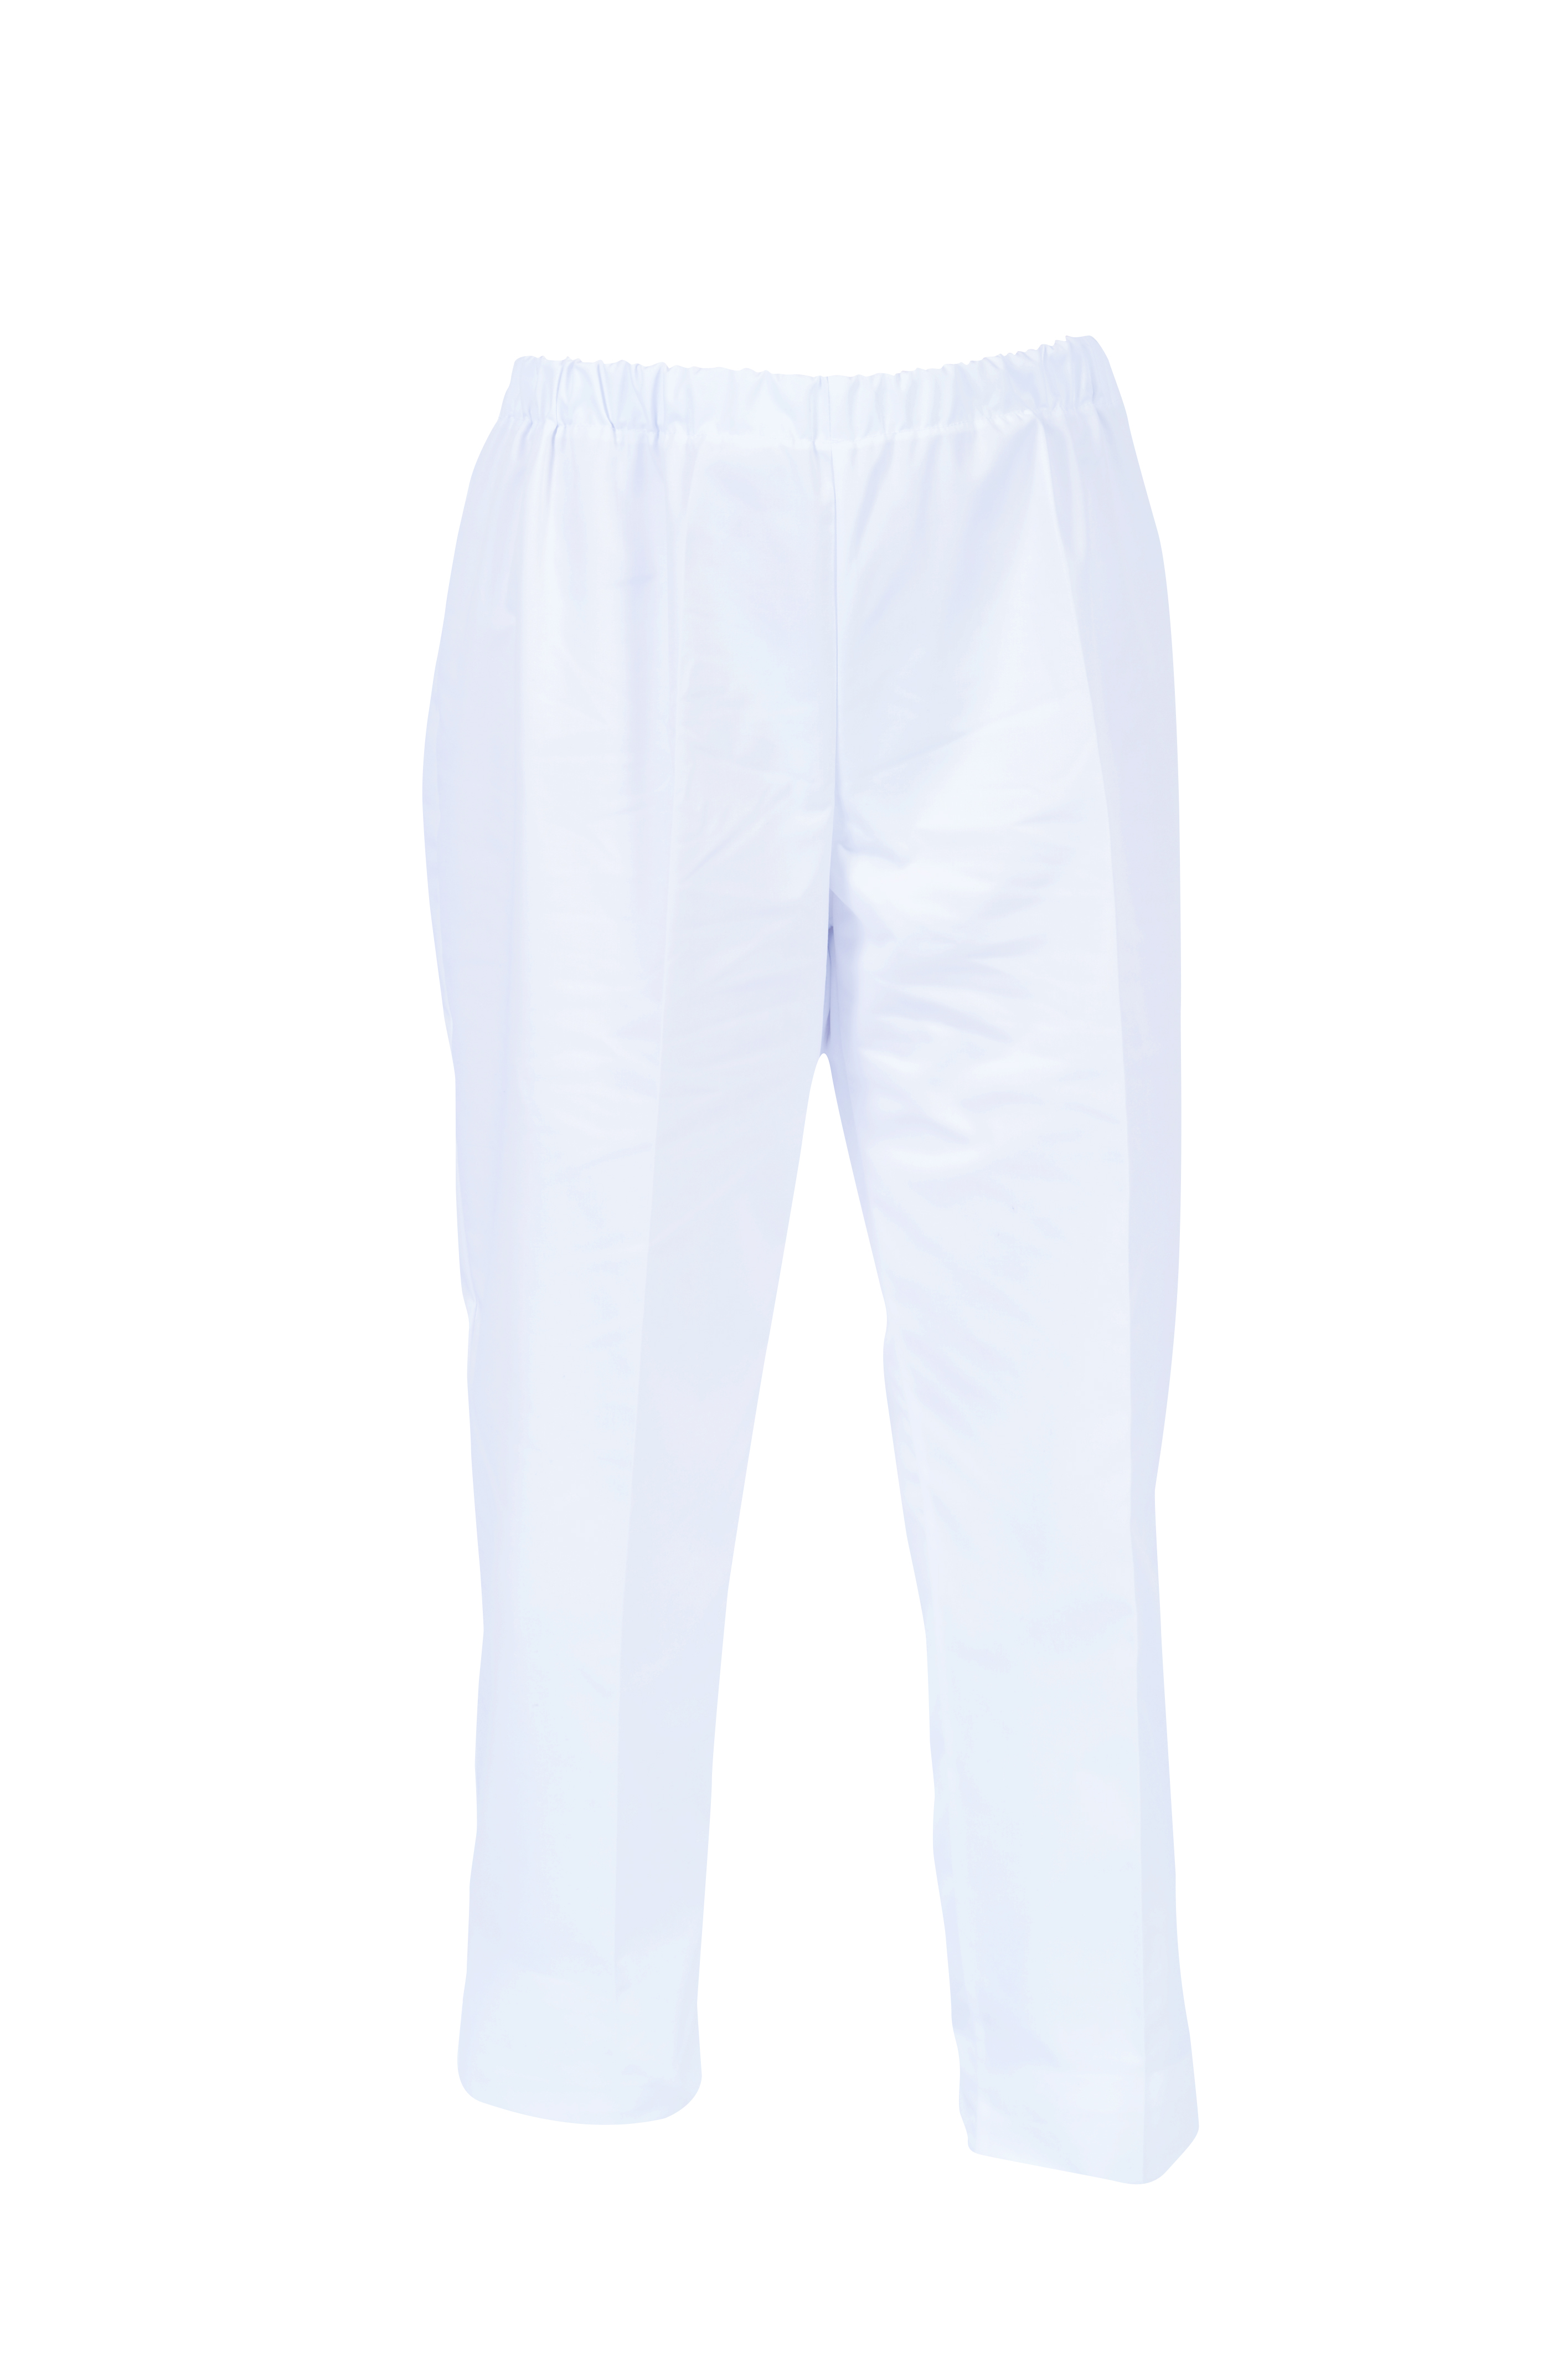 Pantalon mixte Umini blanc  - Réf. 891305 - Illustration n°1